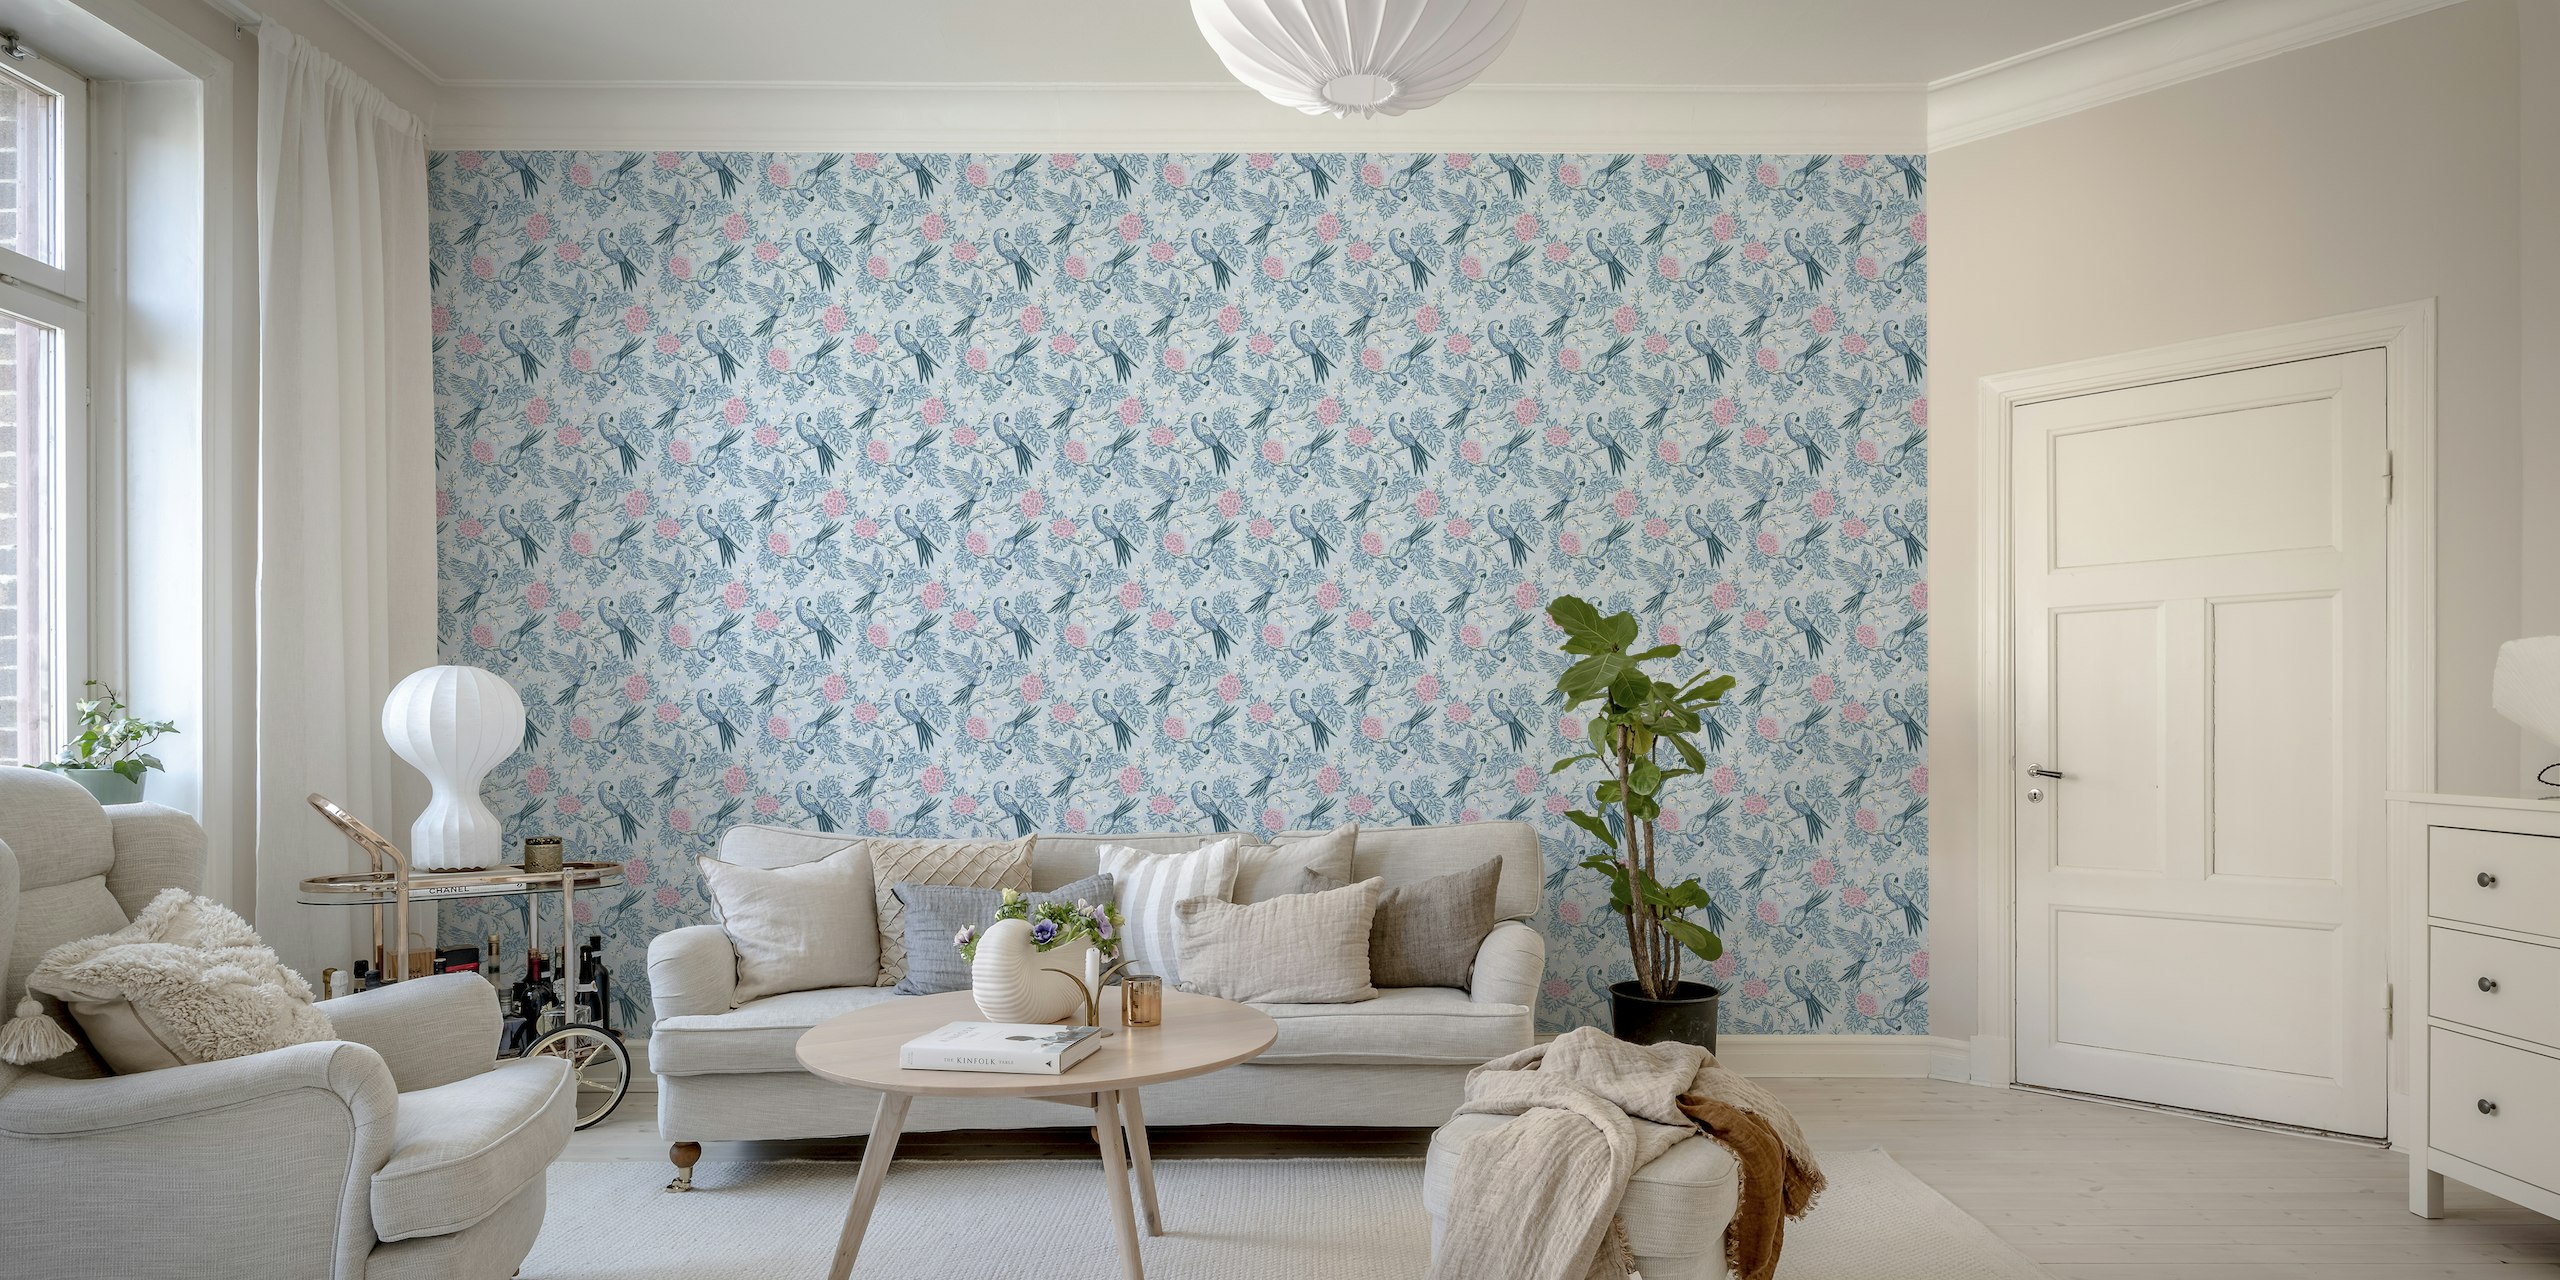 Parrot garden - blue and pink papel de parede